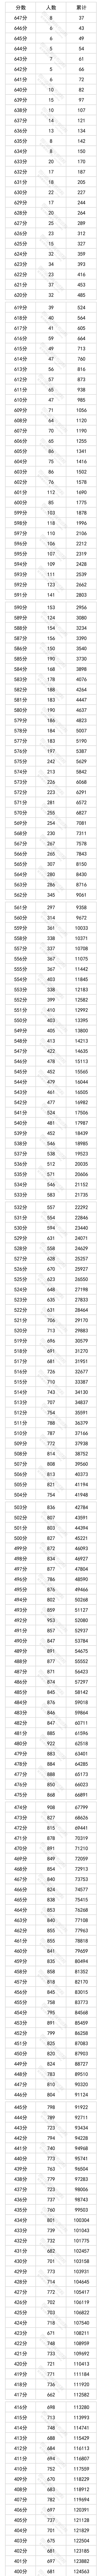 四川省2022年普通高考文科成绩分段统计表